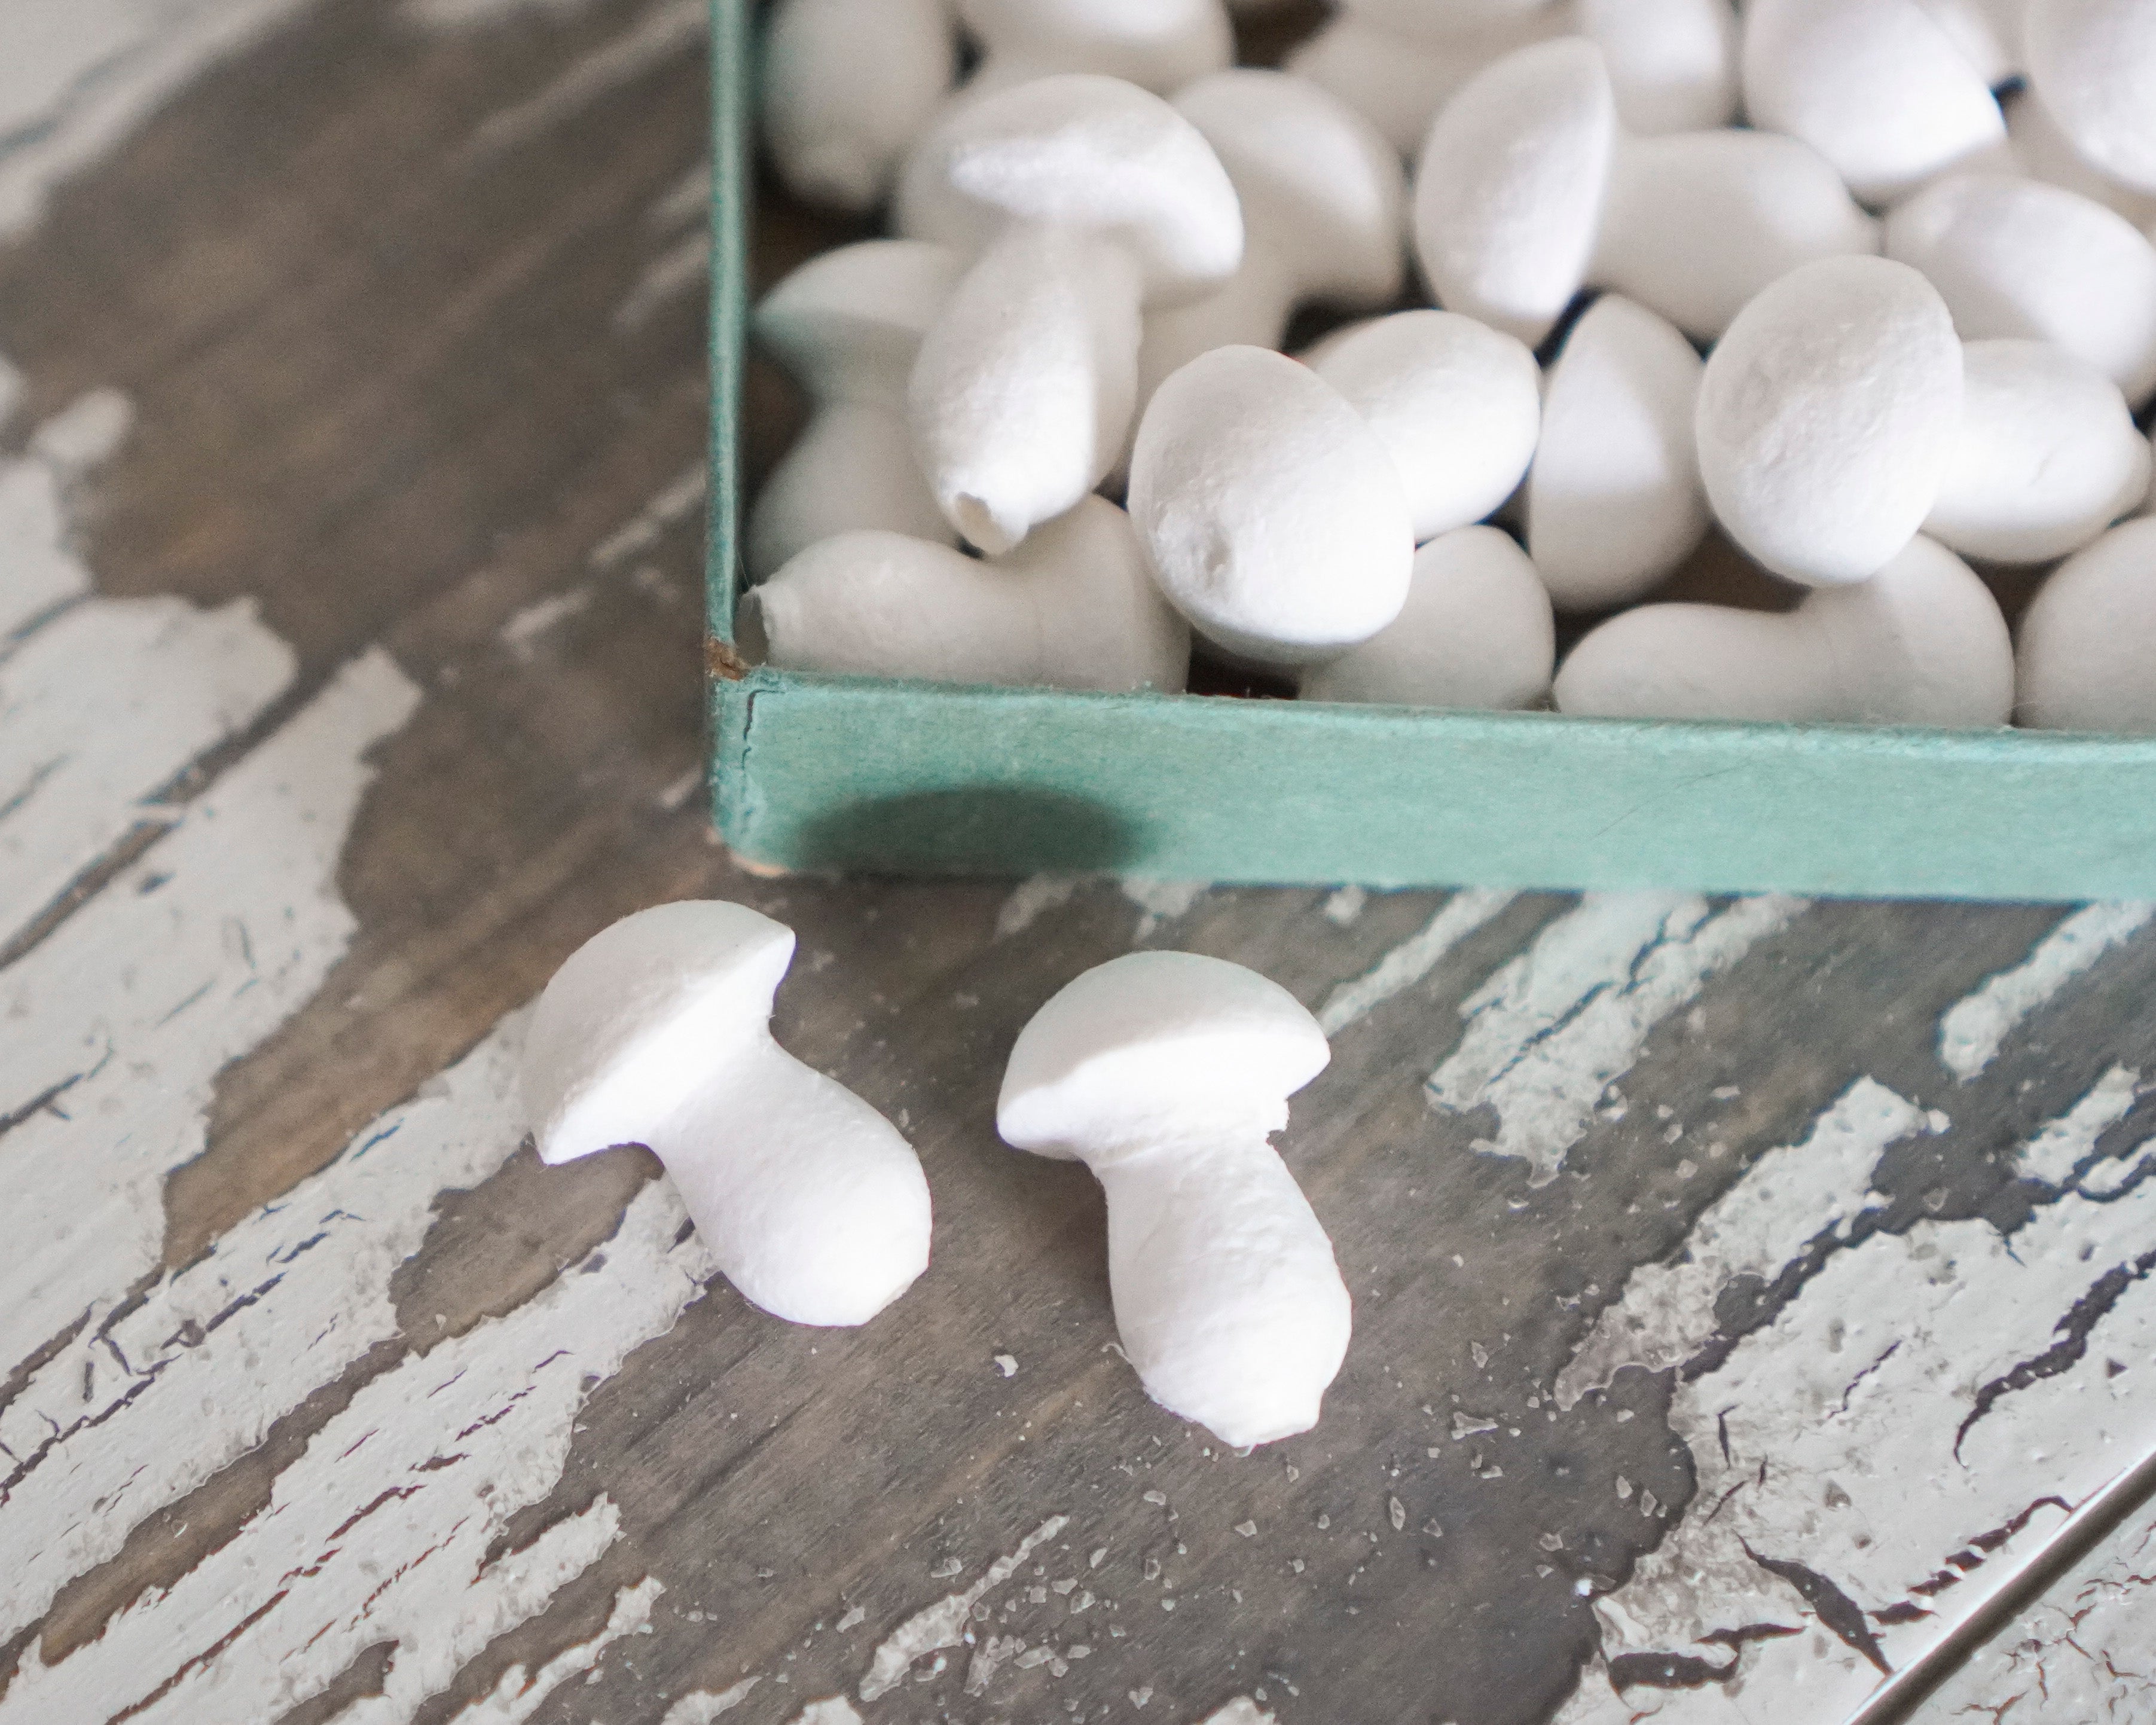 Mini Button Mushrooms - 15 x 20mm Spun Cotton Craft Shapes, 50 Pcs.